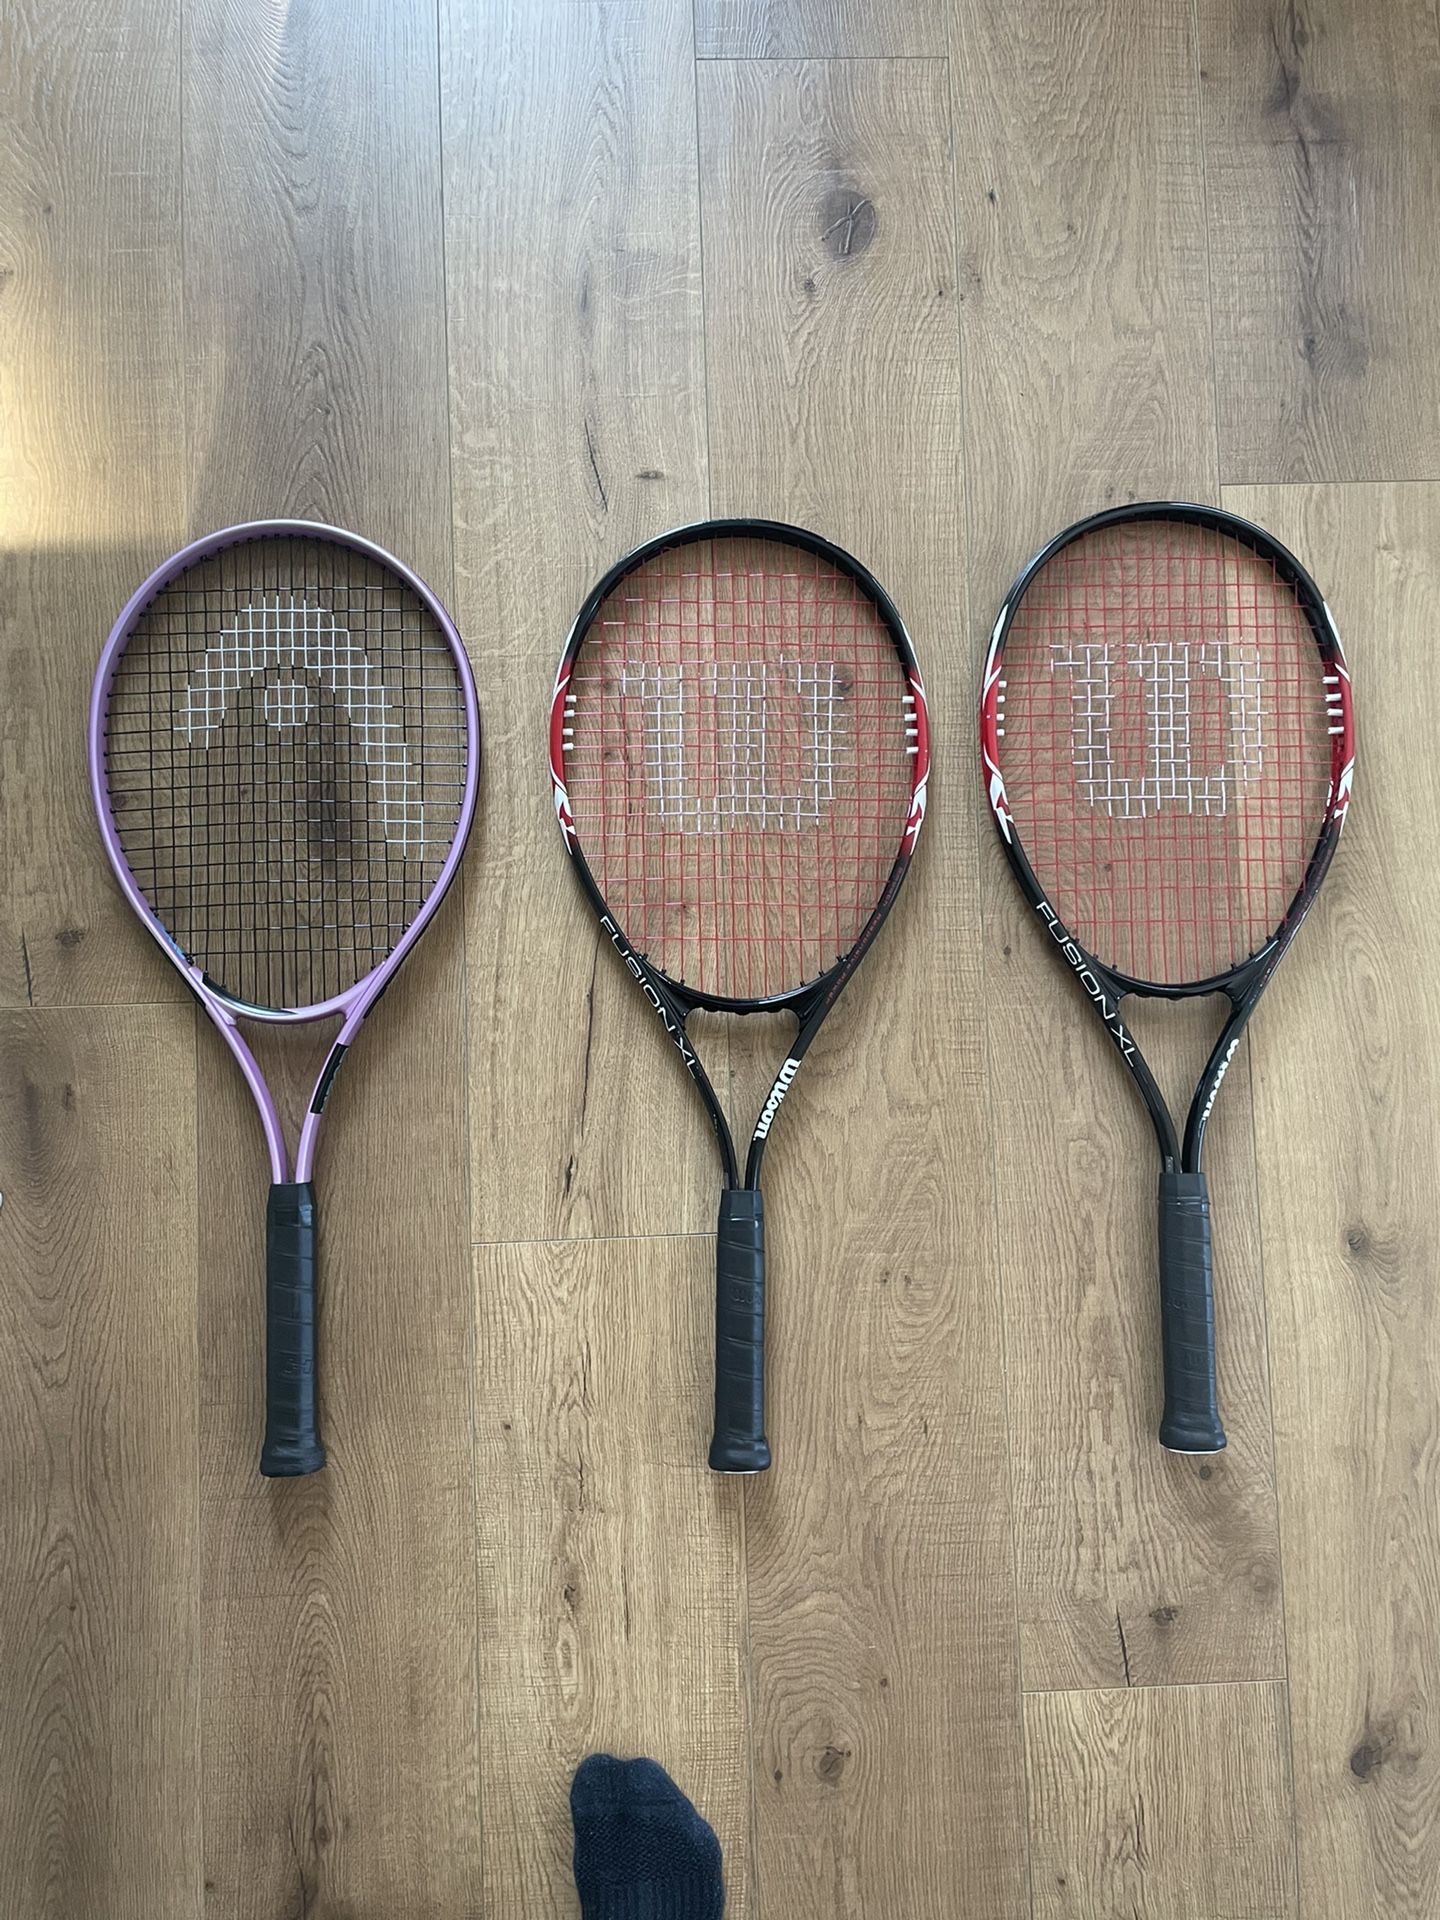 BRAND NEW - Tennis Rackets ($20/each)